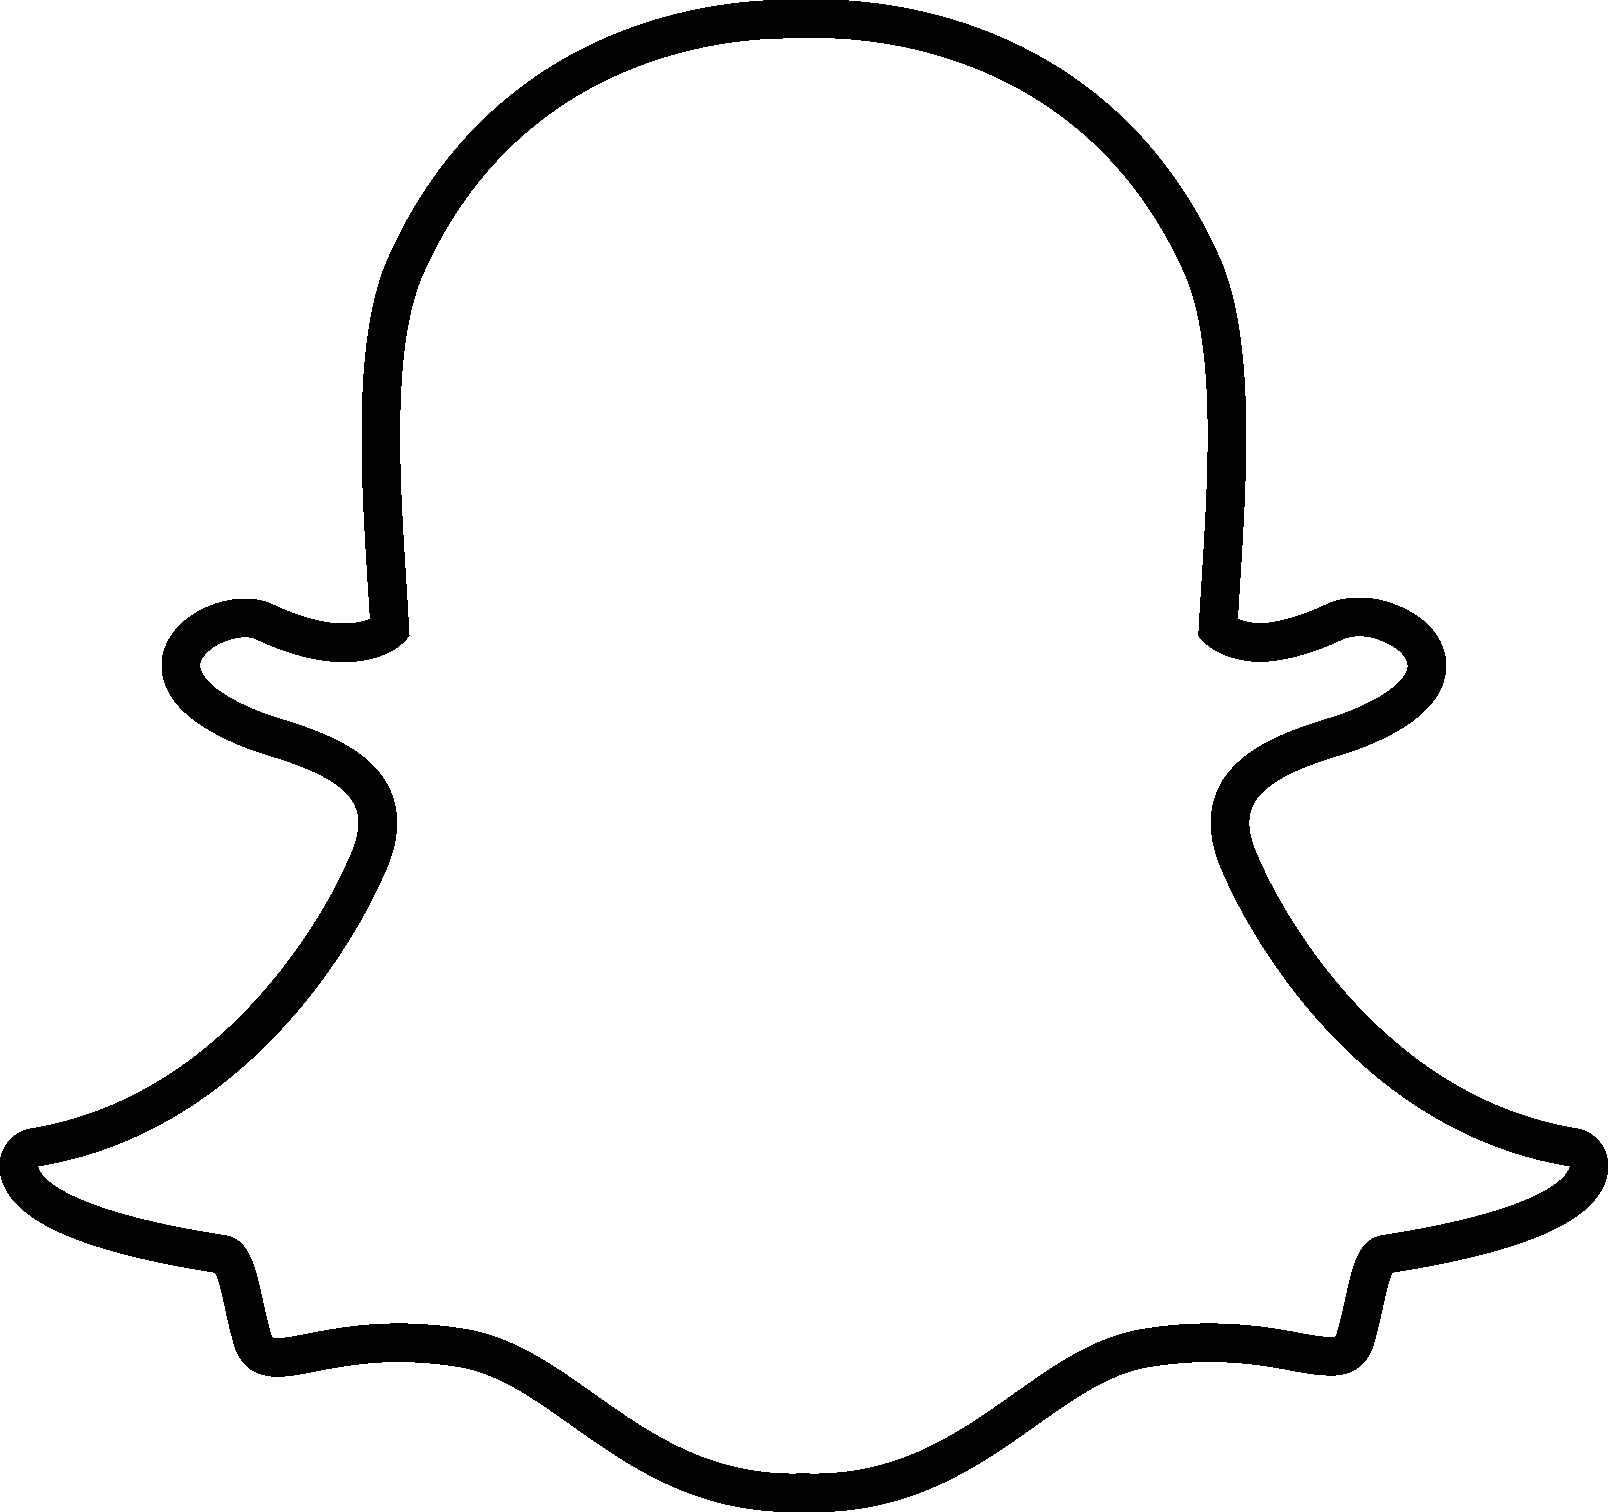 A White Logo Of A Snapchat